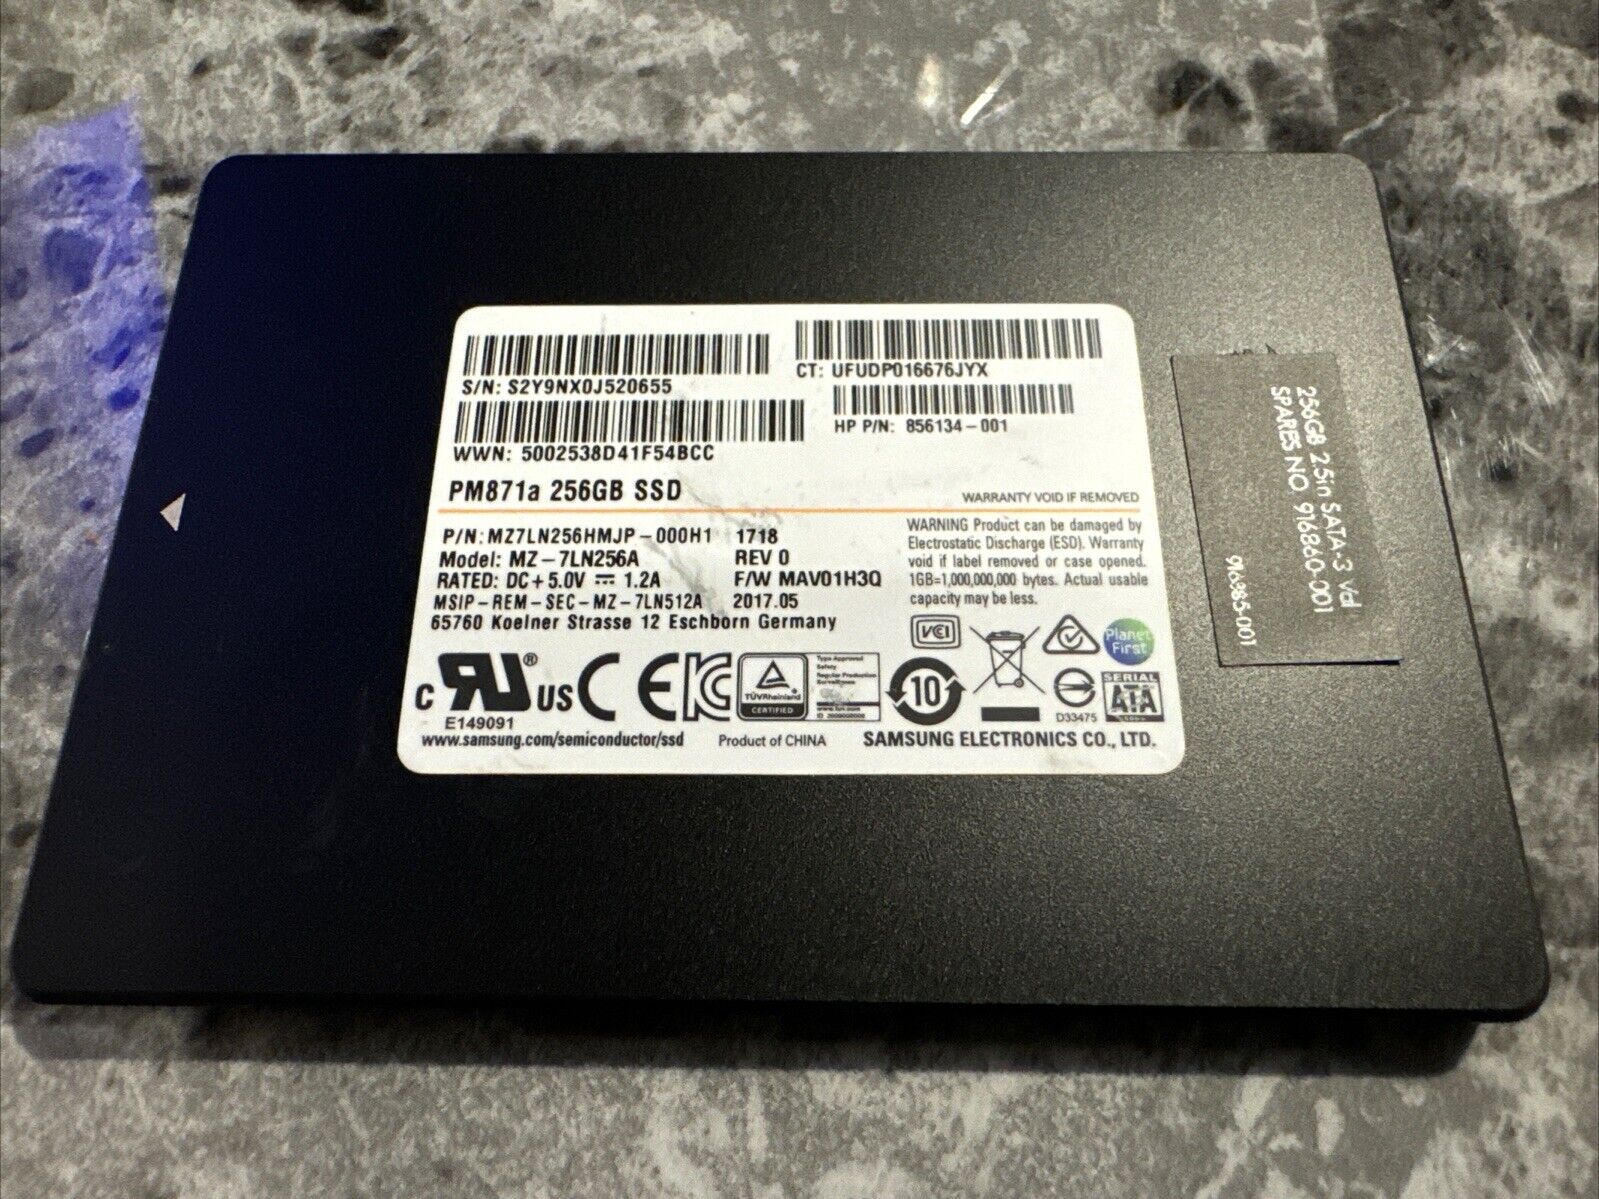 Samsung MZ-7LN2560 PM871 Series 256GB SSD 6Gb/s 80% Health